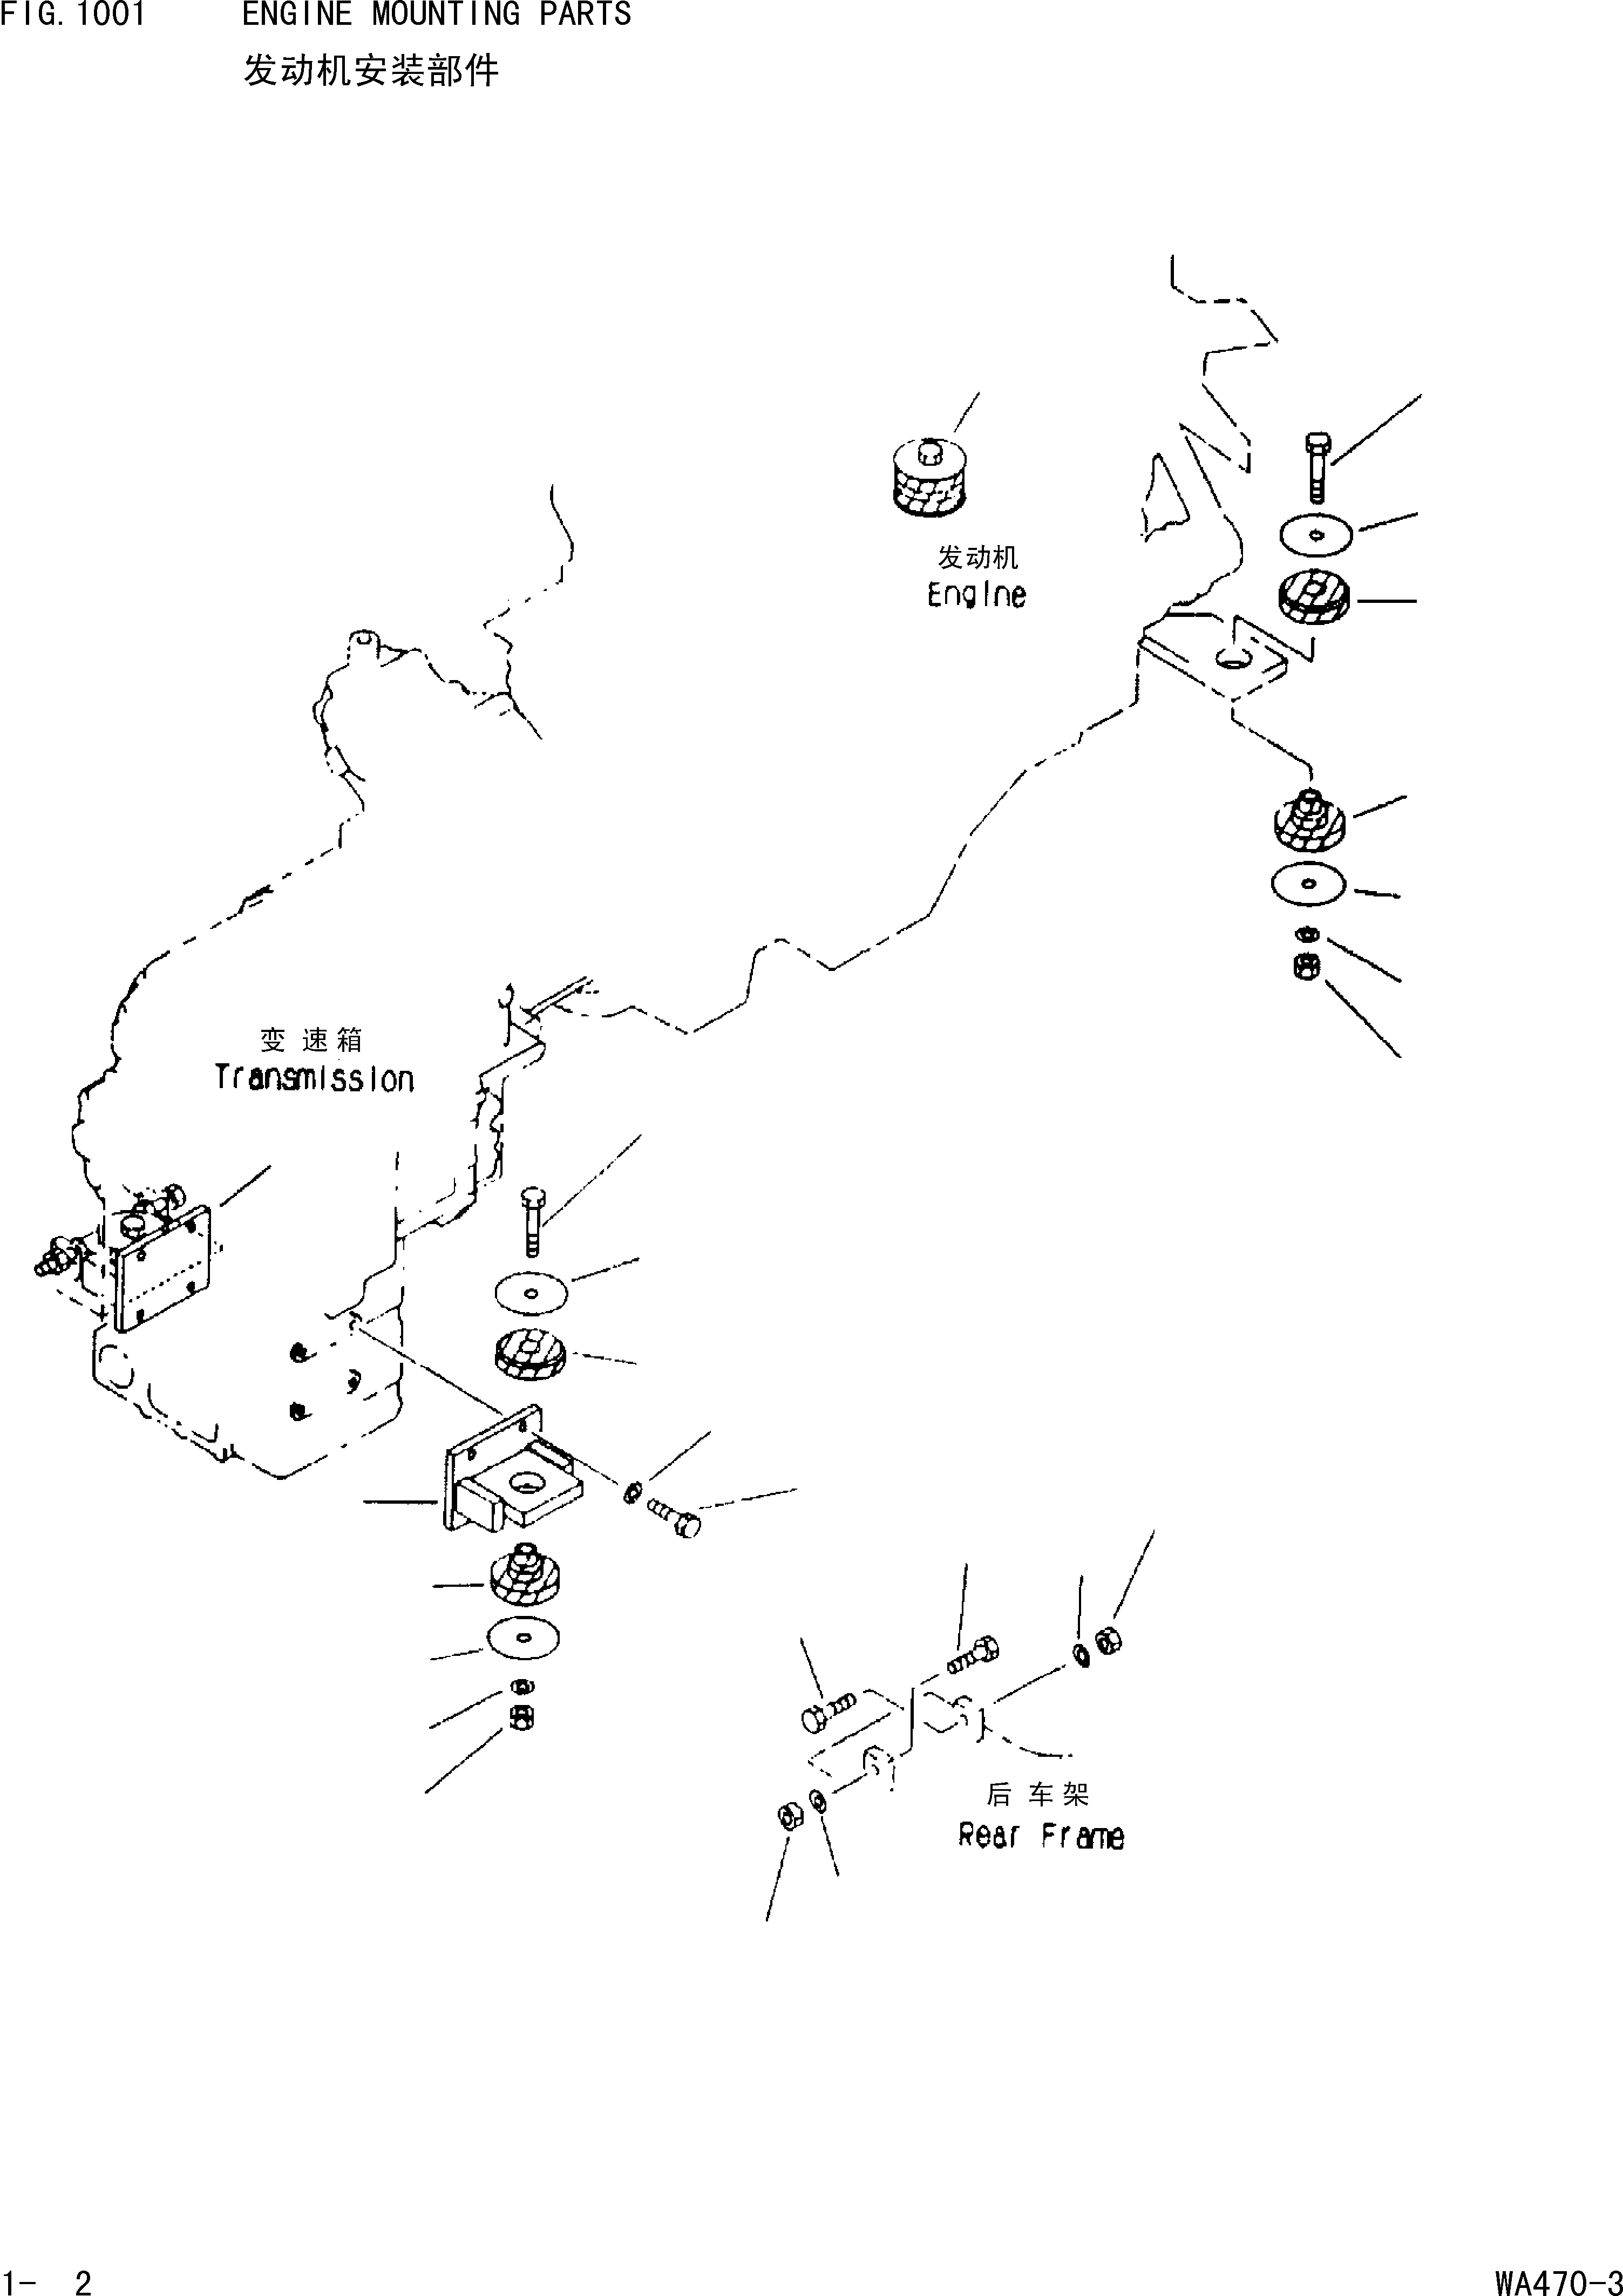 Схема запчастей Komatsu WA470-3 - КРЕПЛЕНИЕ ДВИГАТЕЛЯ [КОМПОНЕНТЫ ДВИГАТЕЛЯ И ЭЛЕКТРИКА]